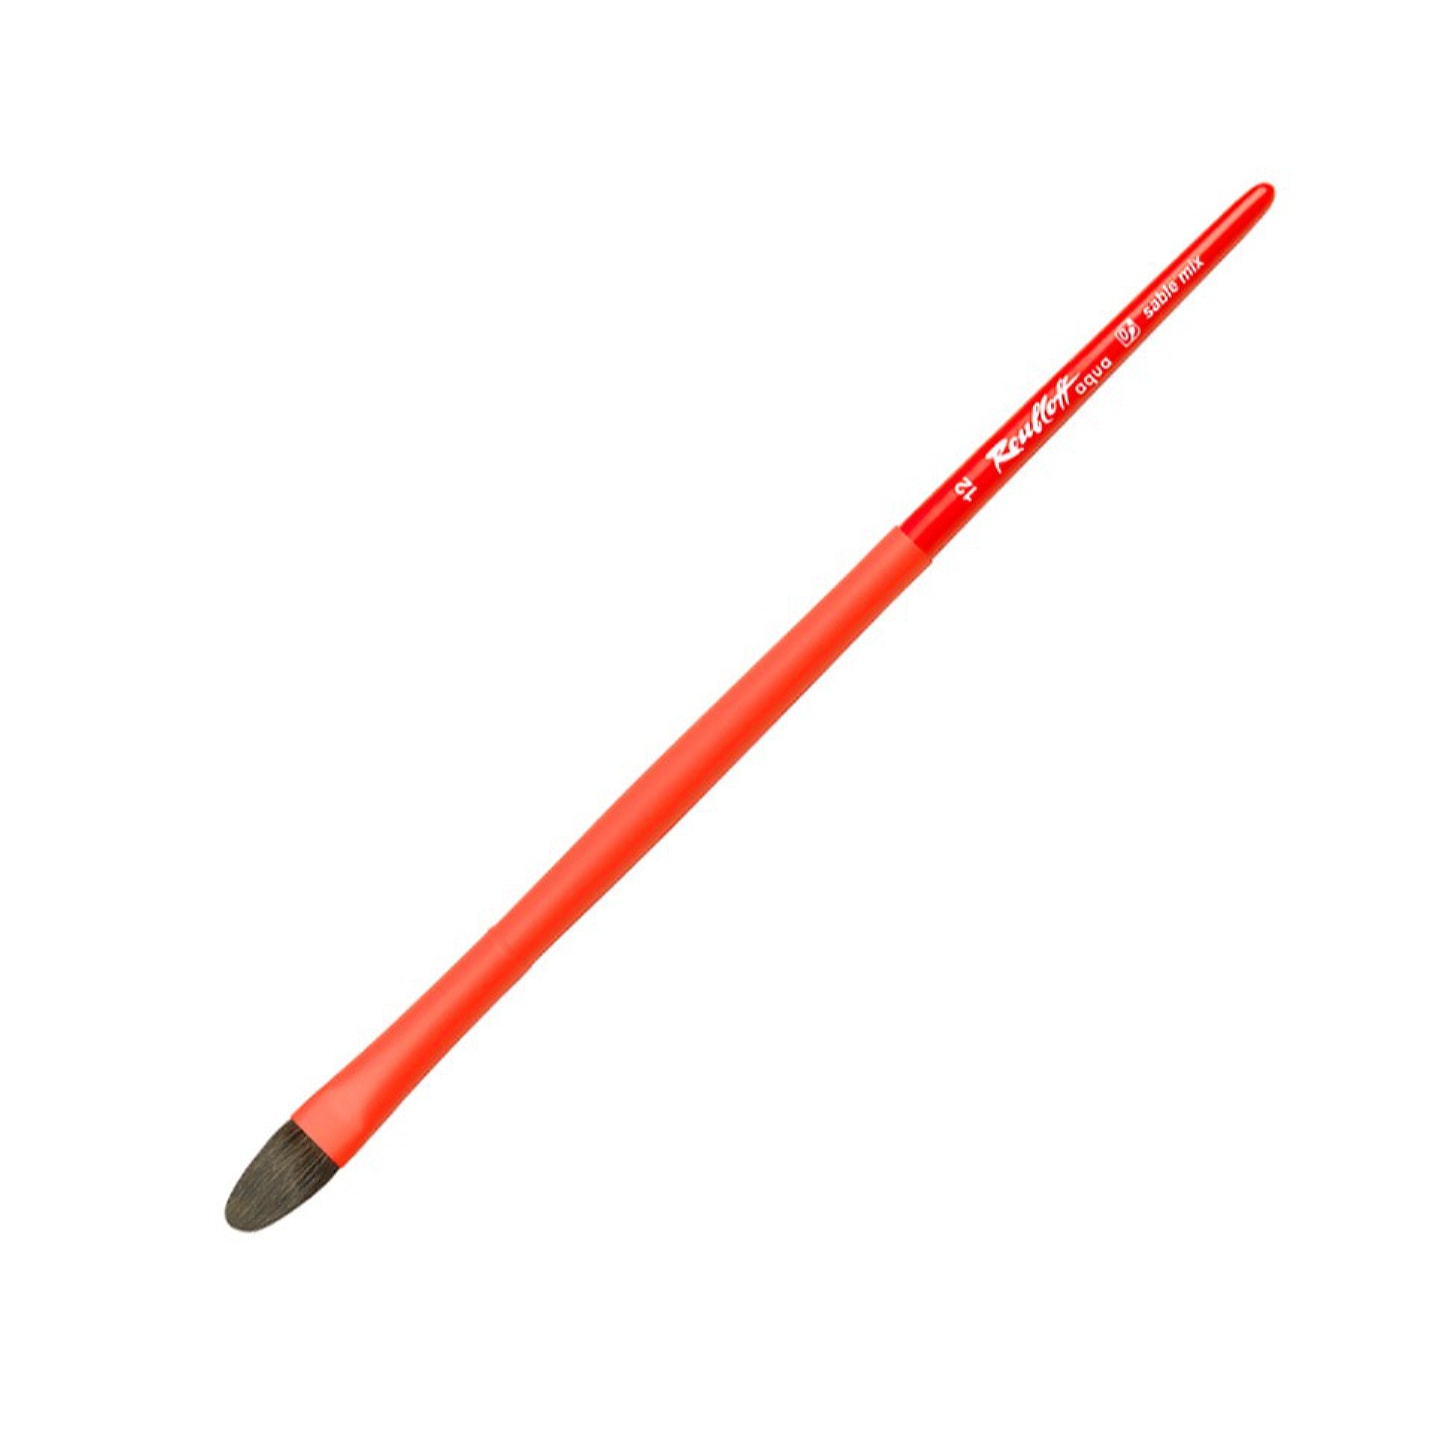 Кисть Roubloff Aqua Red oval соболь-микс овальная обойма soft-touch ручка длинная красная №12 5 шт/упак